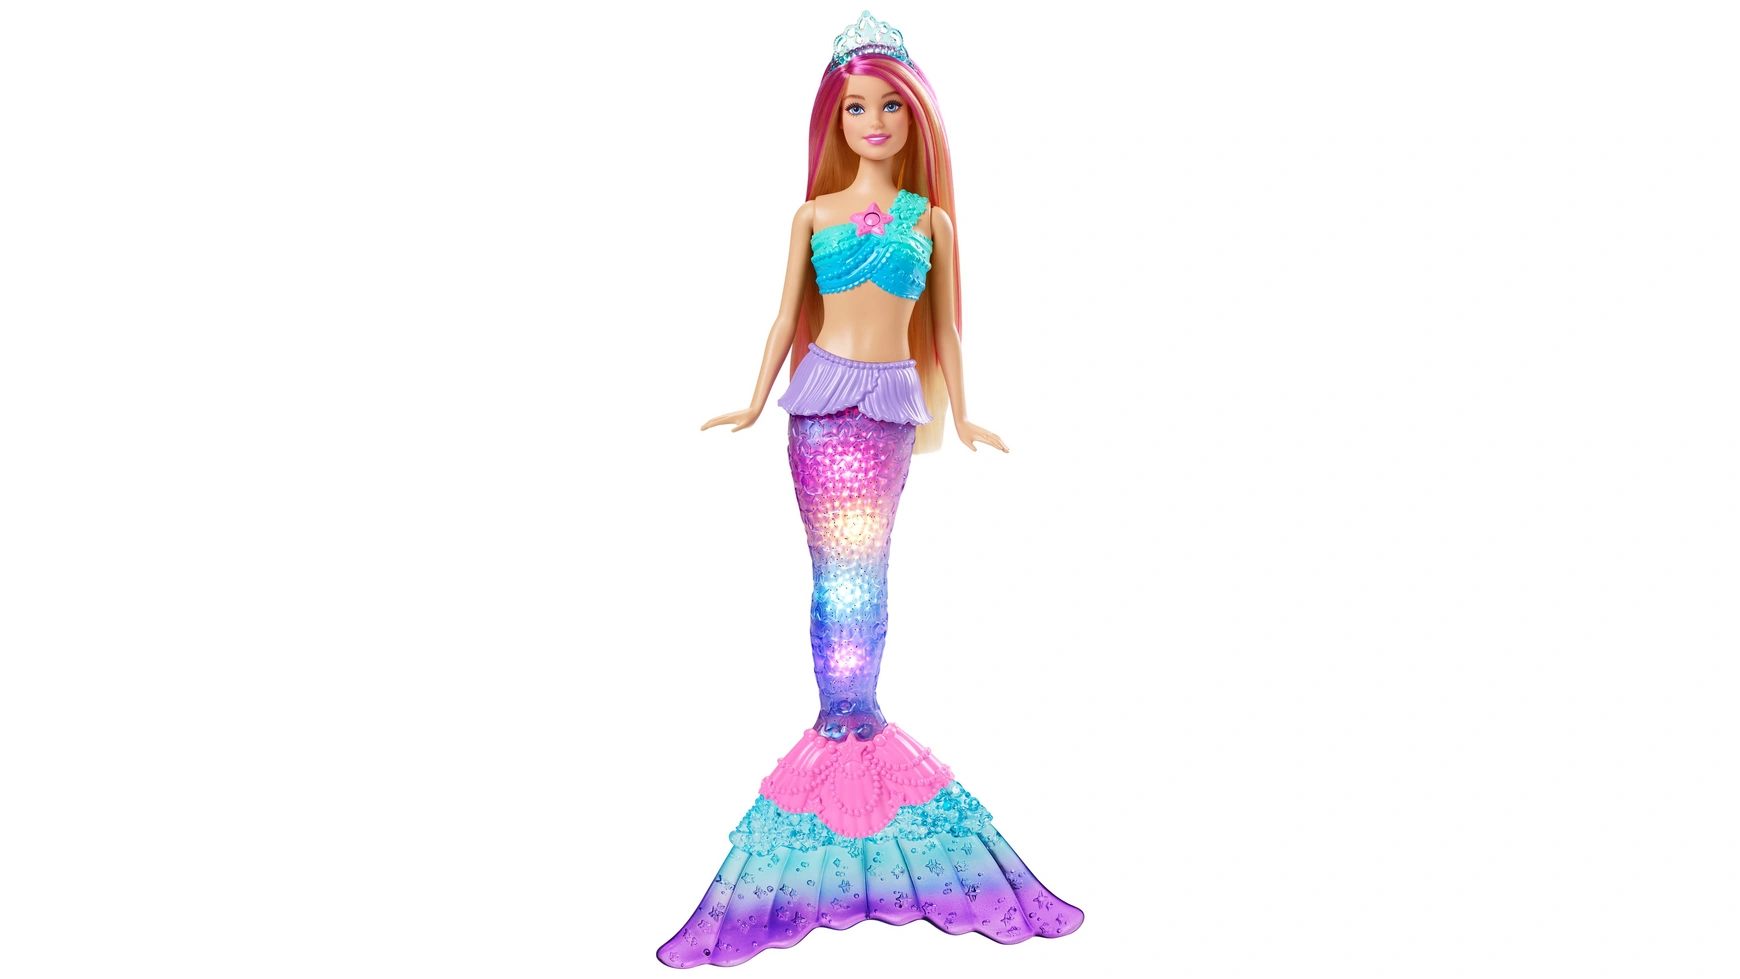 Кукла Barbie Волшебная светящаяся русалка (загорается), Barbie Dreamtopia волшебная принцесса русалка с меняющим цвет осьминогом playmobil